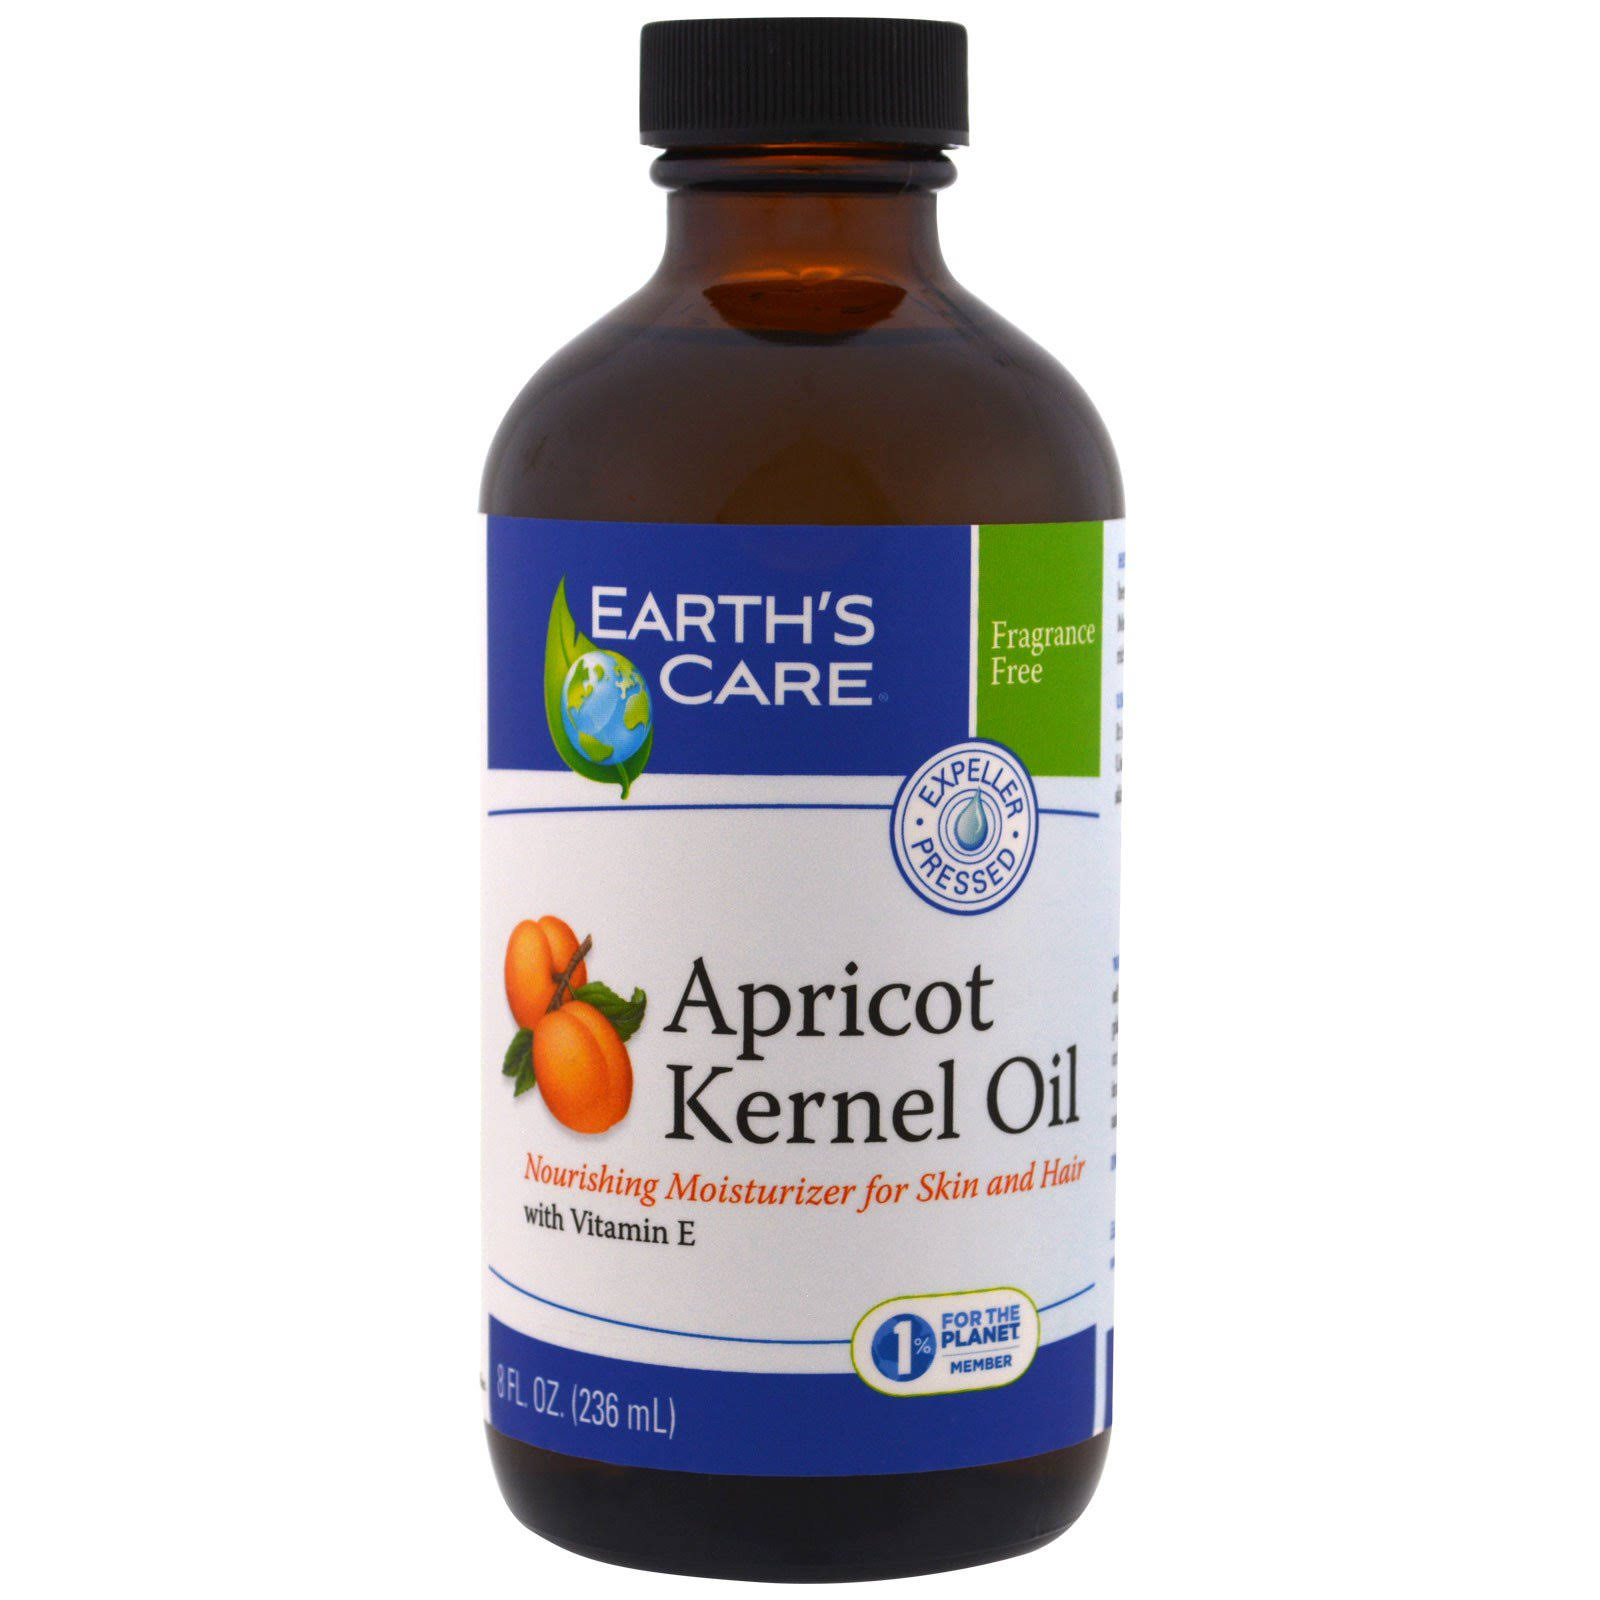 Earth's Care Apricot Kernel Oil - 8oz